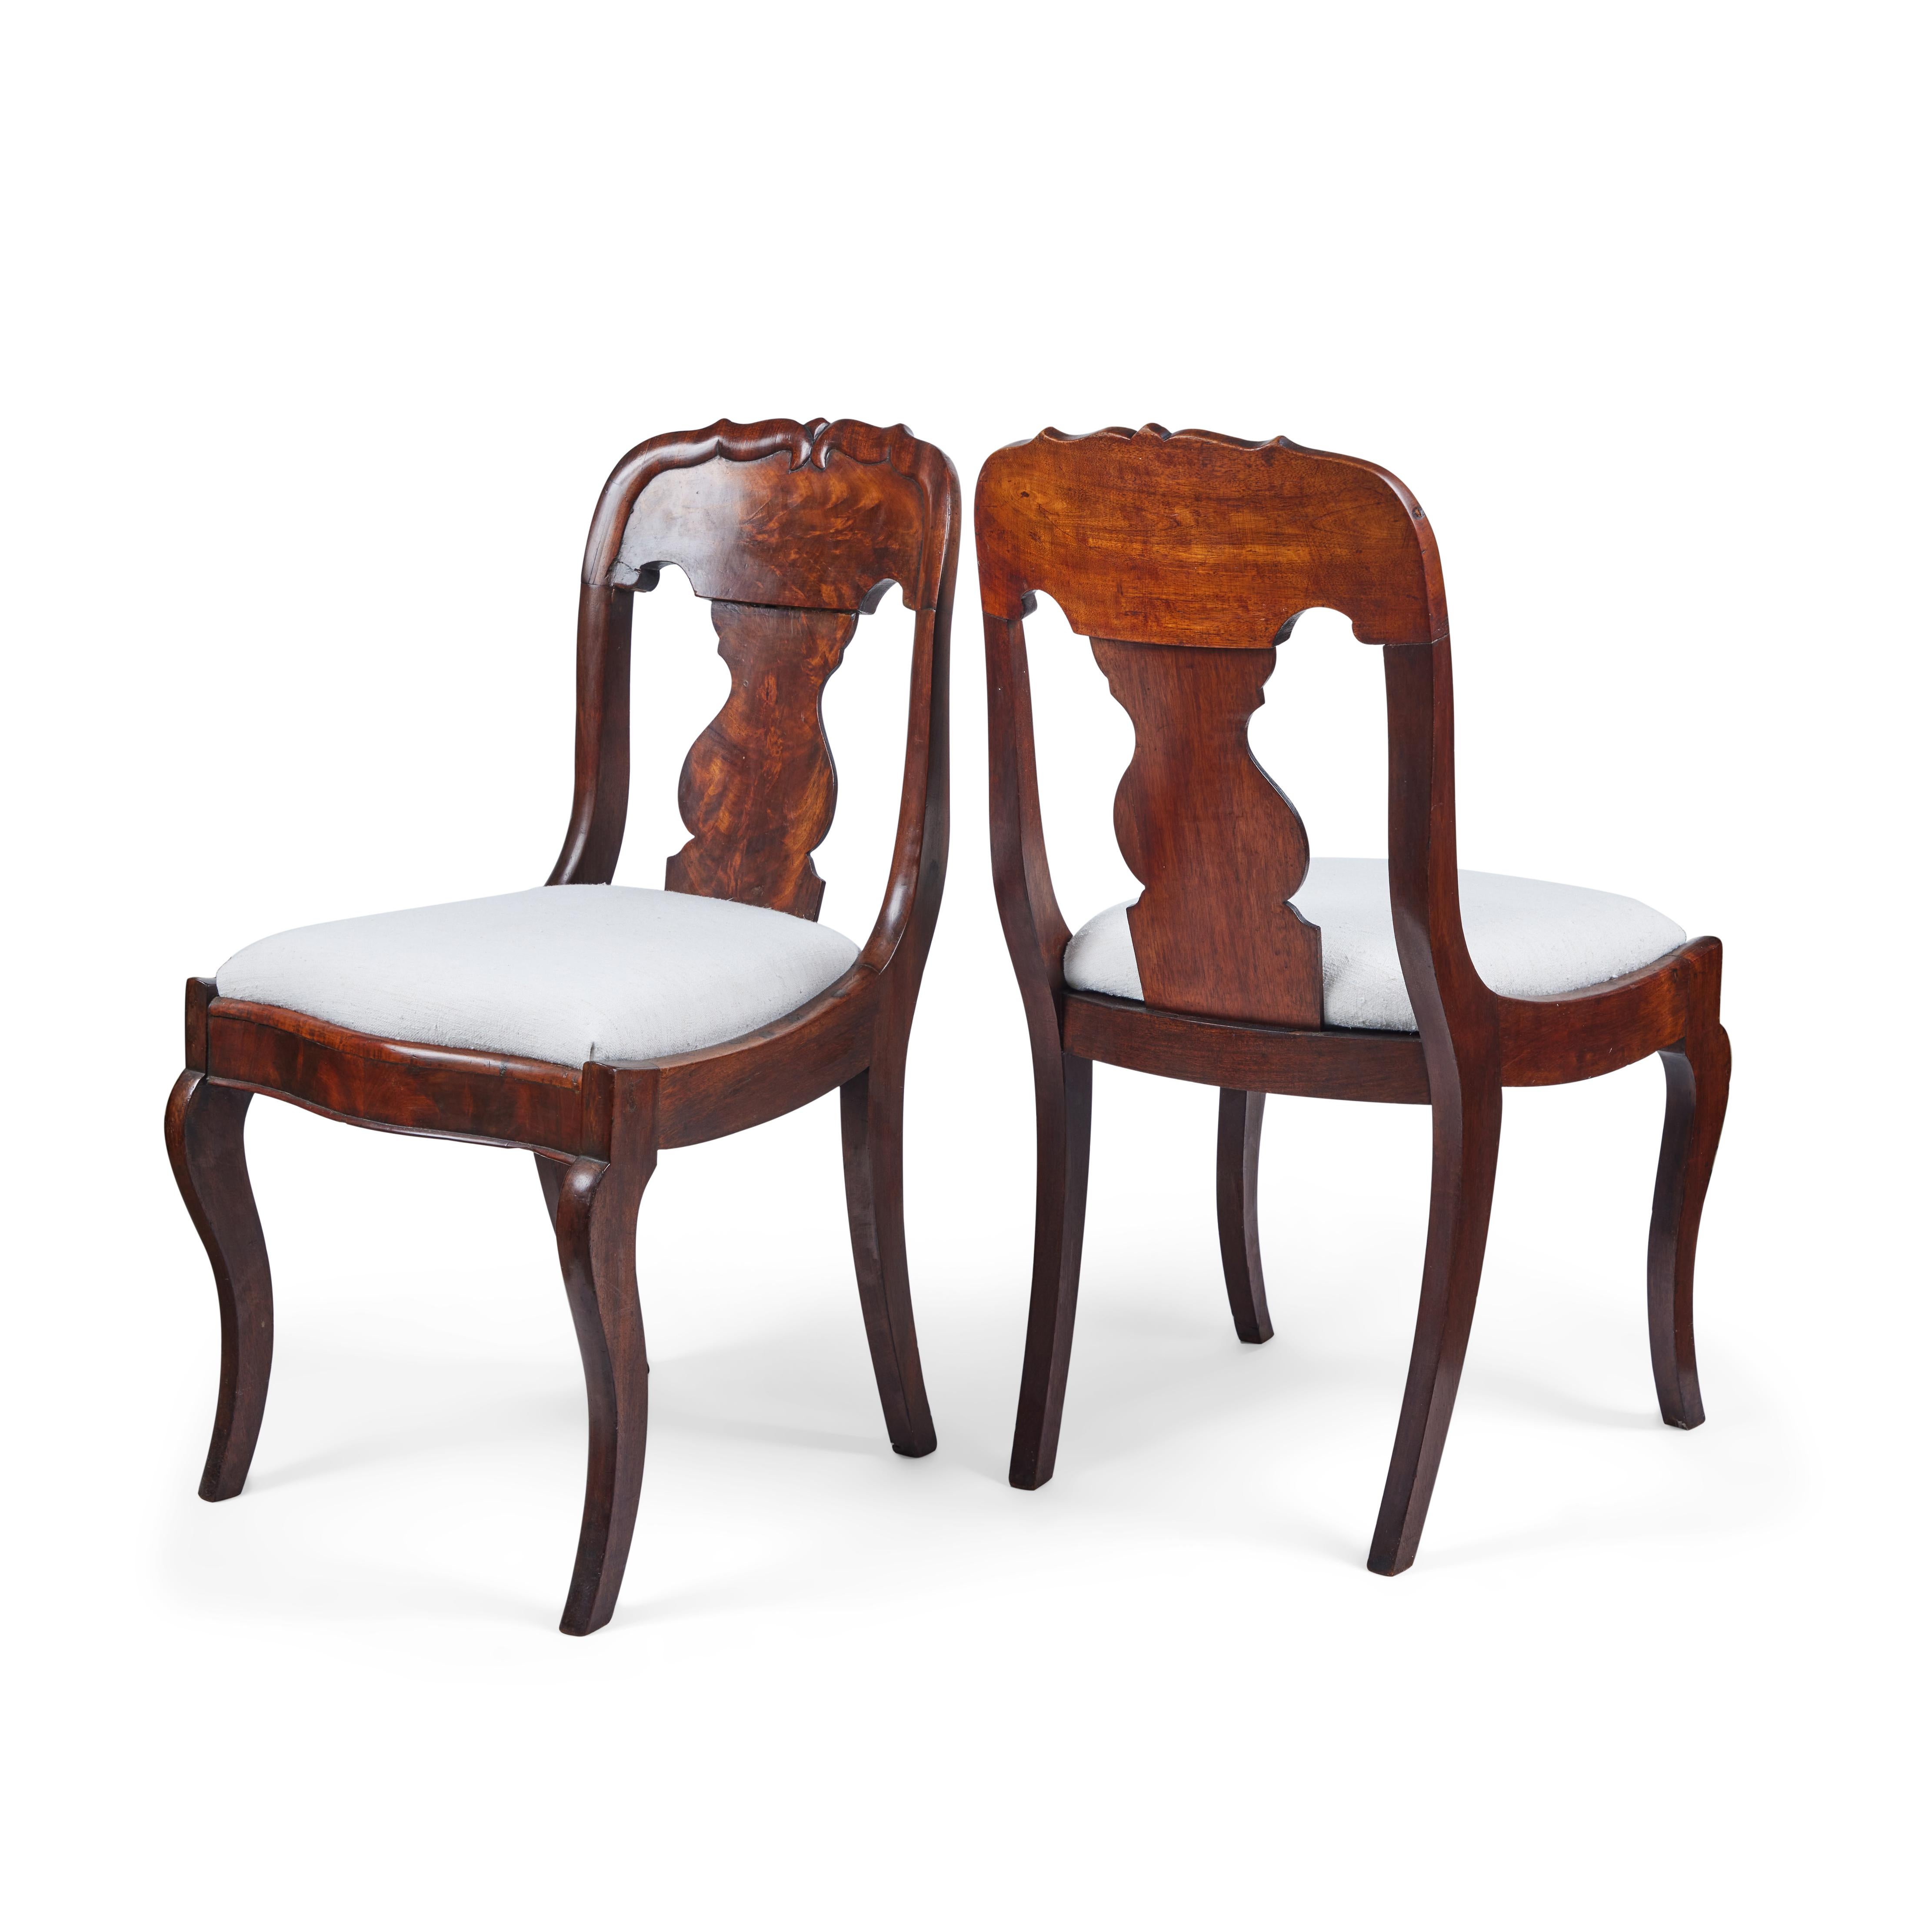 Hier ist ein schönes Paar eleganter antiker Stühle im Queen Anne-Stil aus Walnuss-Maserholz. Sie sind zierlich, haben anmutige Cabriole-Beine und sind mit einem handgesponnenen elfenbeinfarbenen Leinen bezogen. Der perfekte Wandakzent oder die